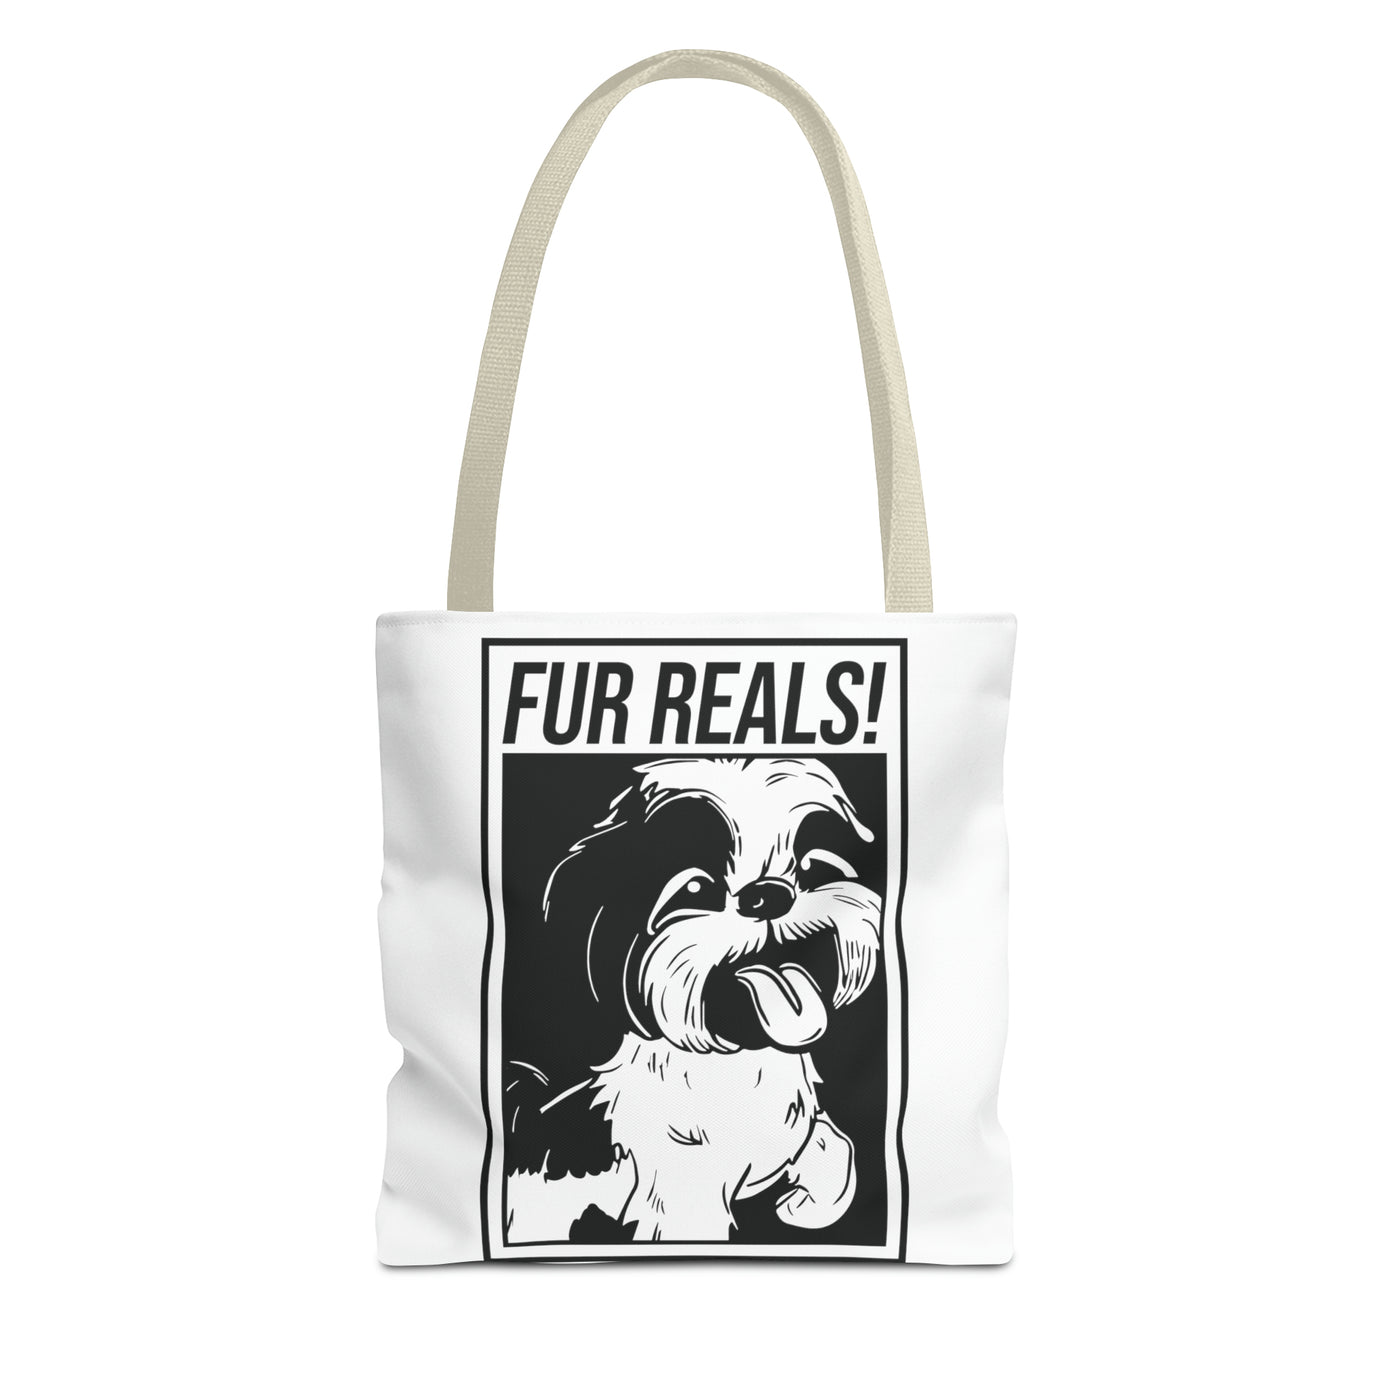 Fur Real Shih Tzu Tote Bag